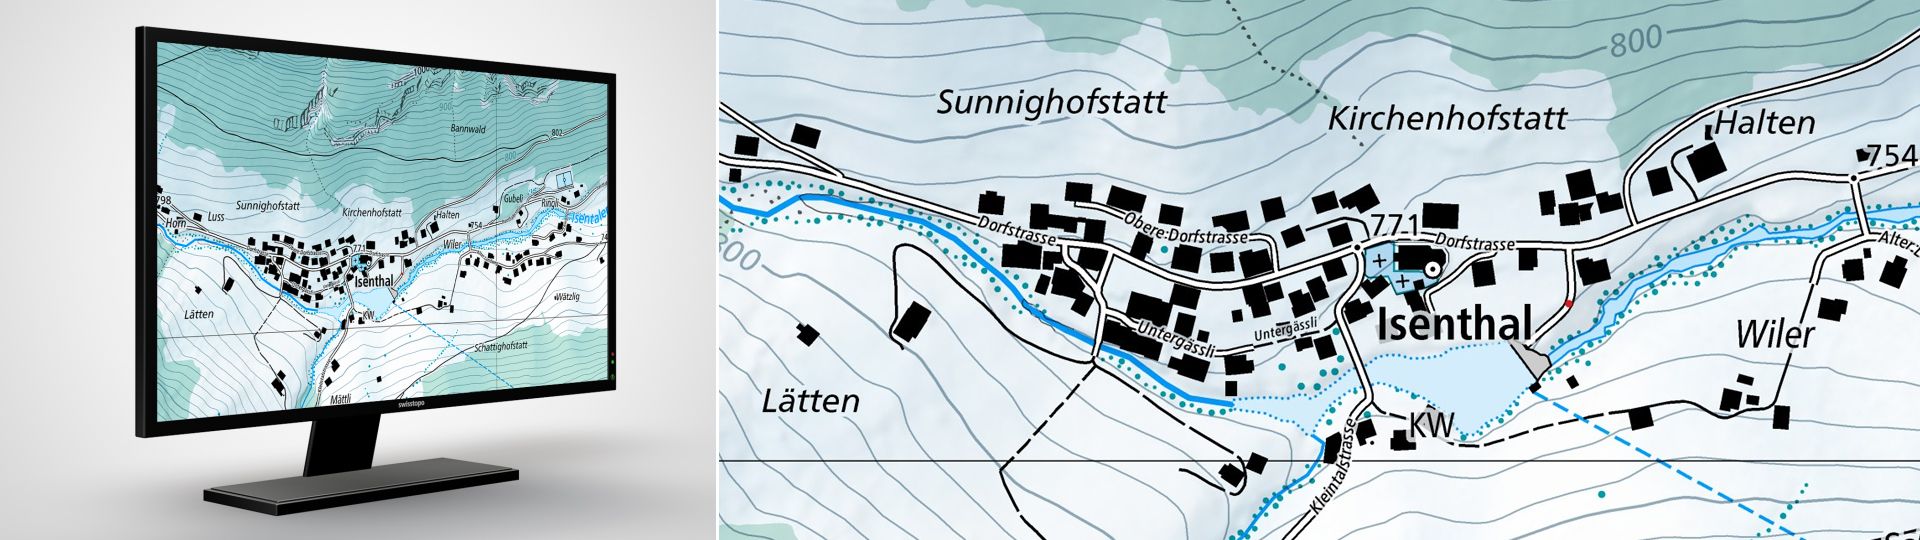 Swiss Map Raster Hiver 10: L’édition d’hiver de la carte nationale numérique au 1:10 000 au format raster